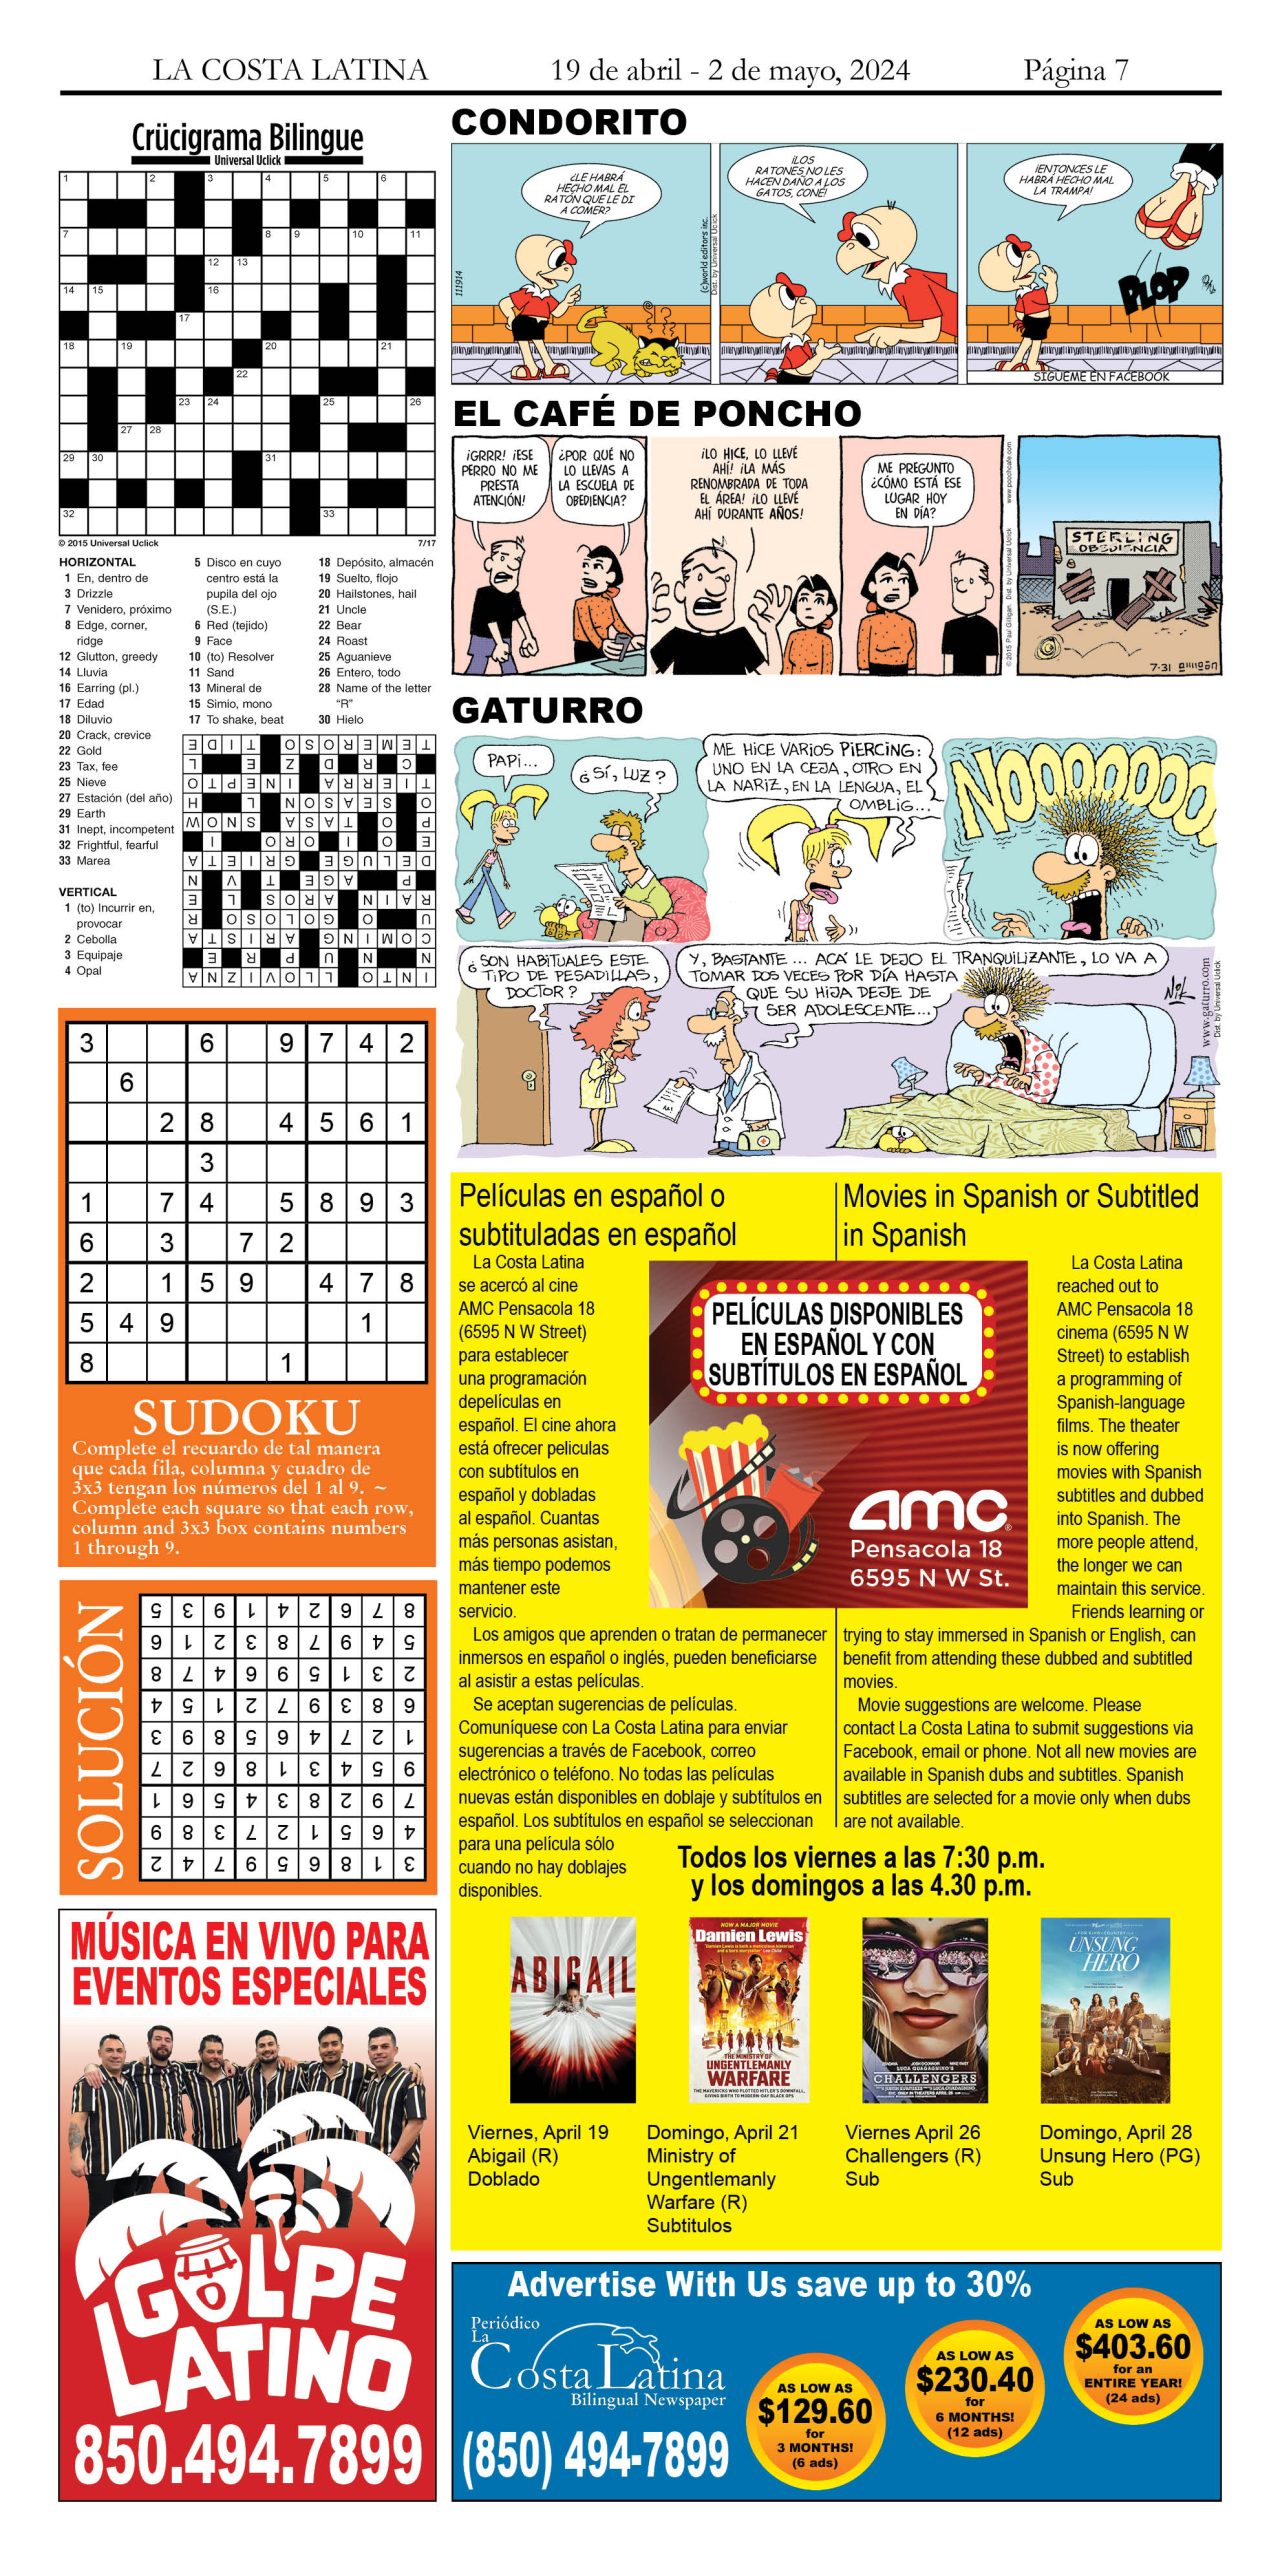 La Costa Latina April 19 - May 2, 2024 page 7